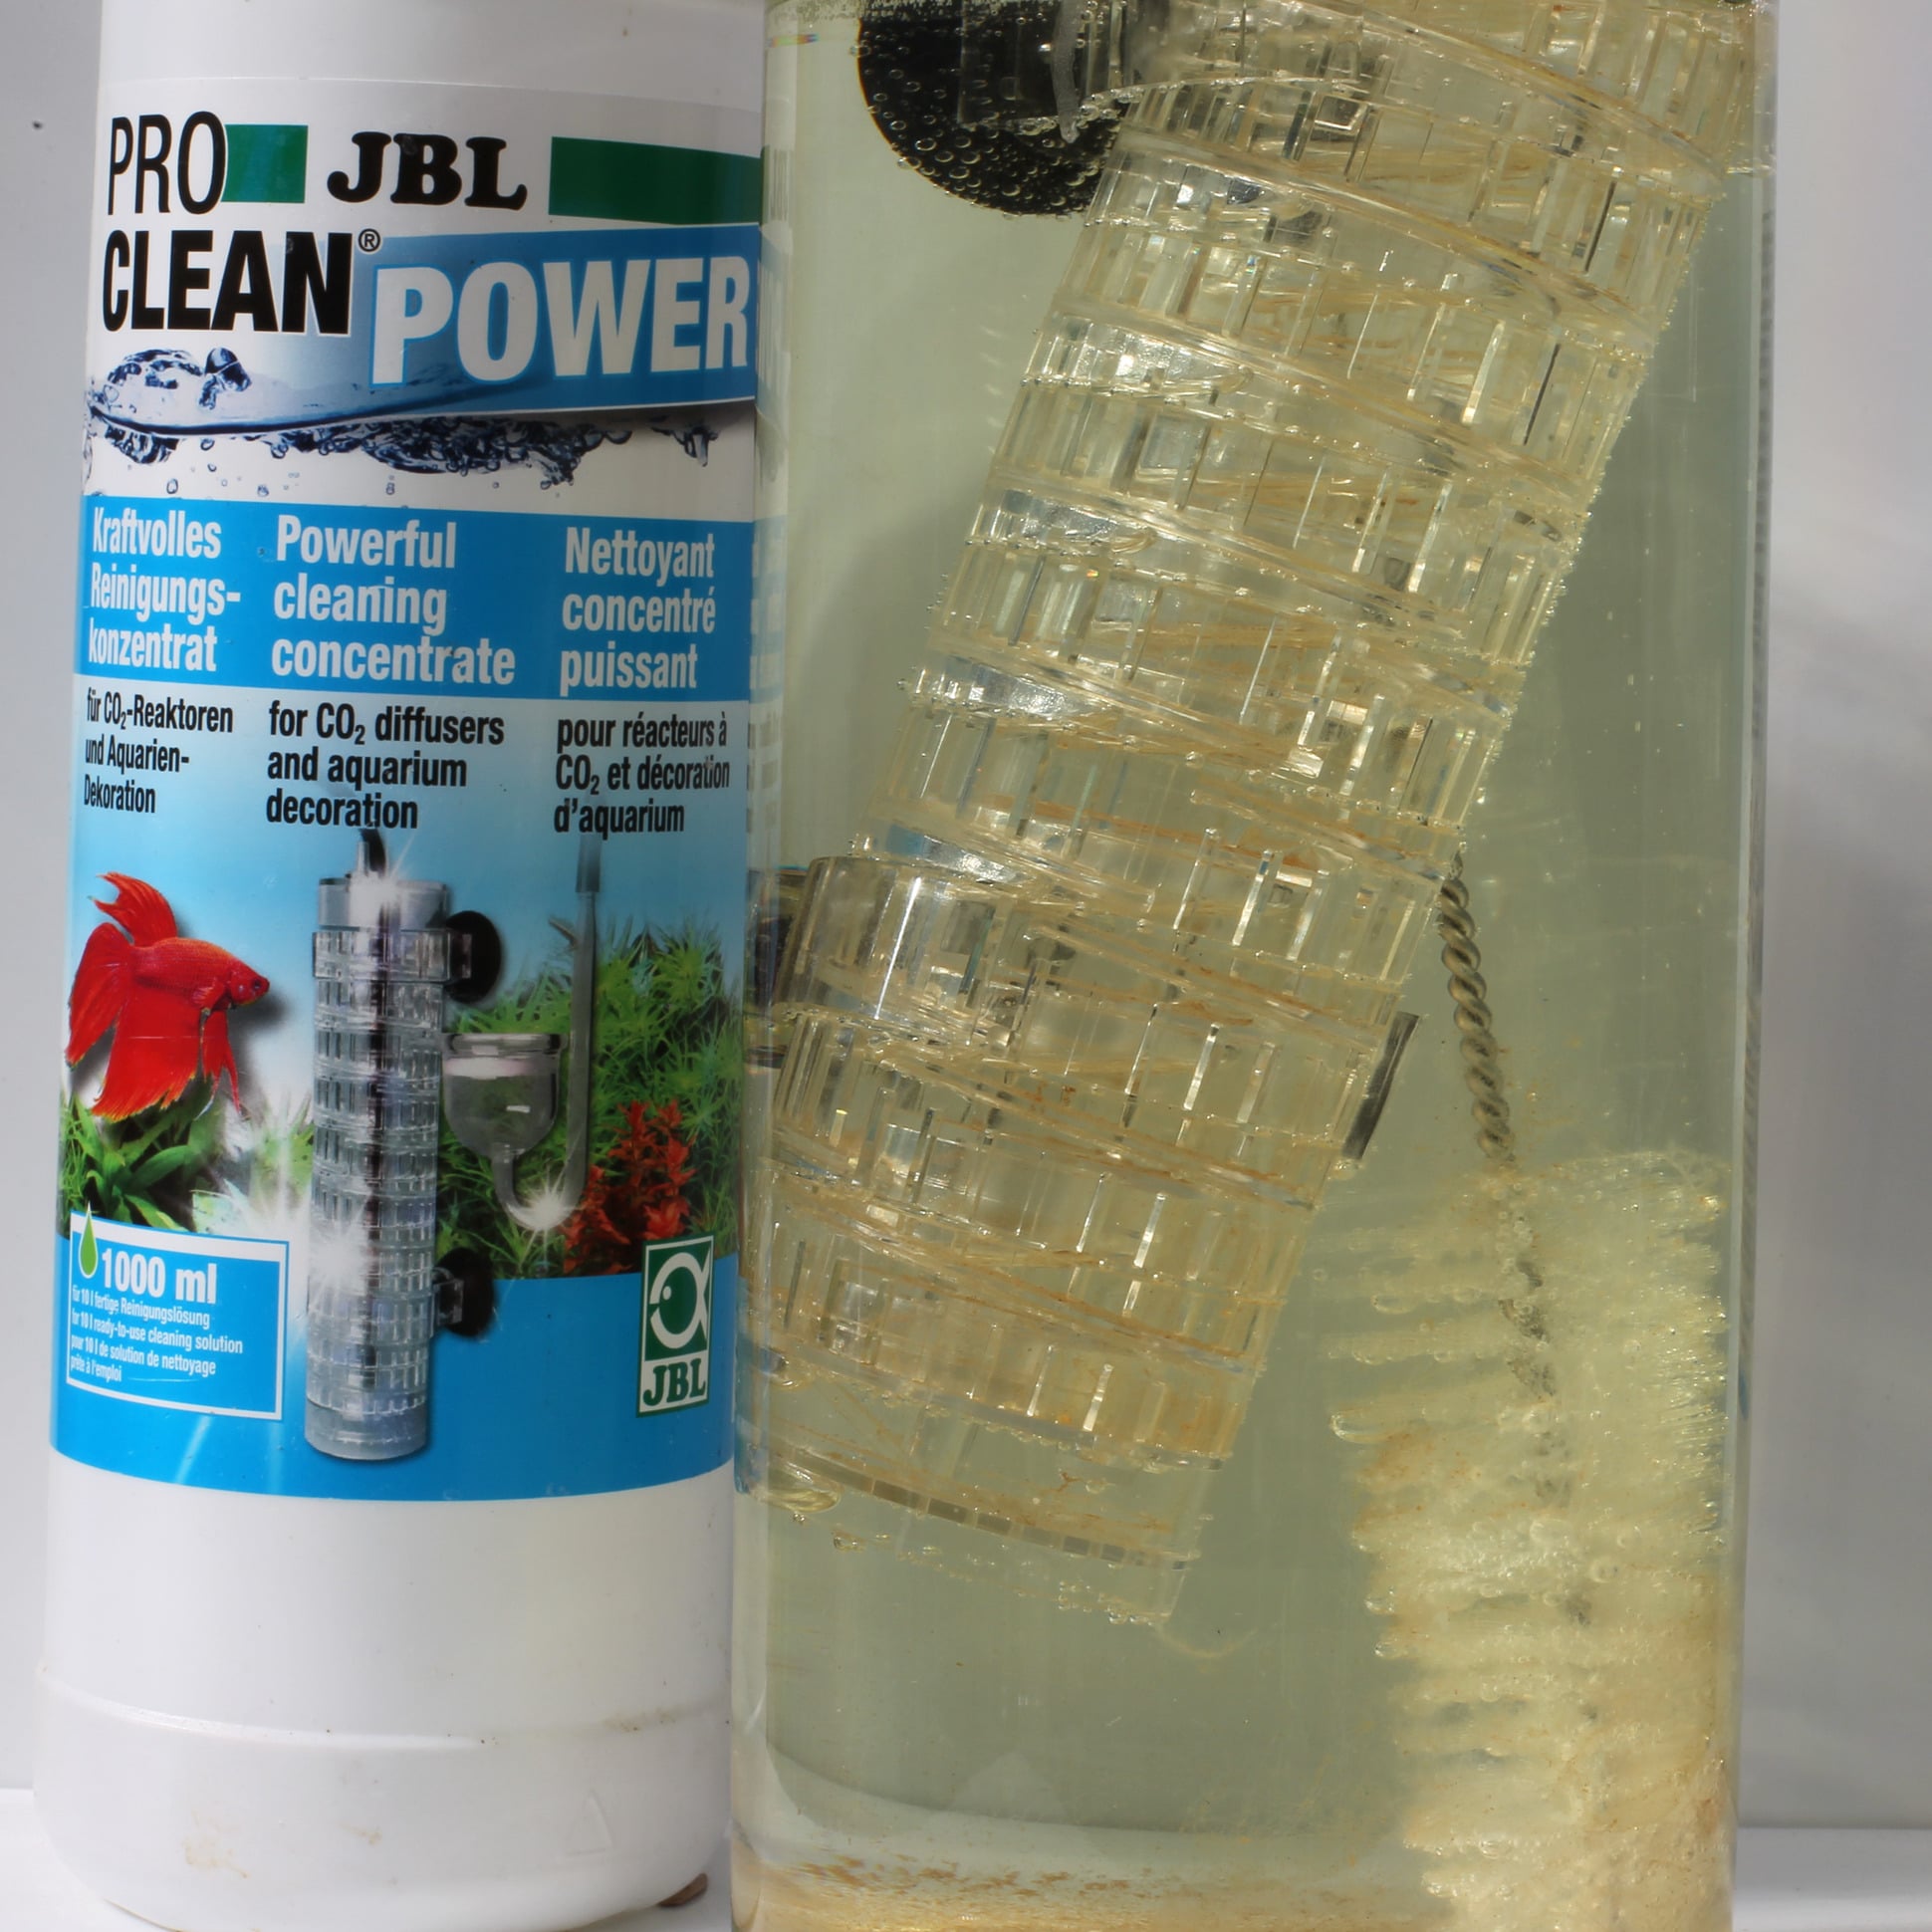 jbl-proclean-power-950-ml-concentre-nettoyant-pour-reacteurs-co2-et-decorations-d-aquarium-9-min